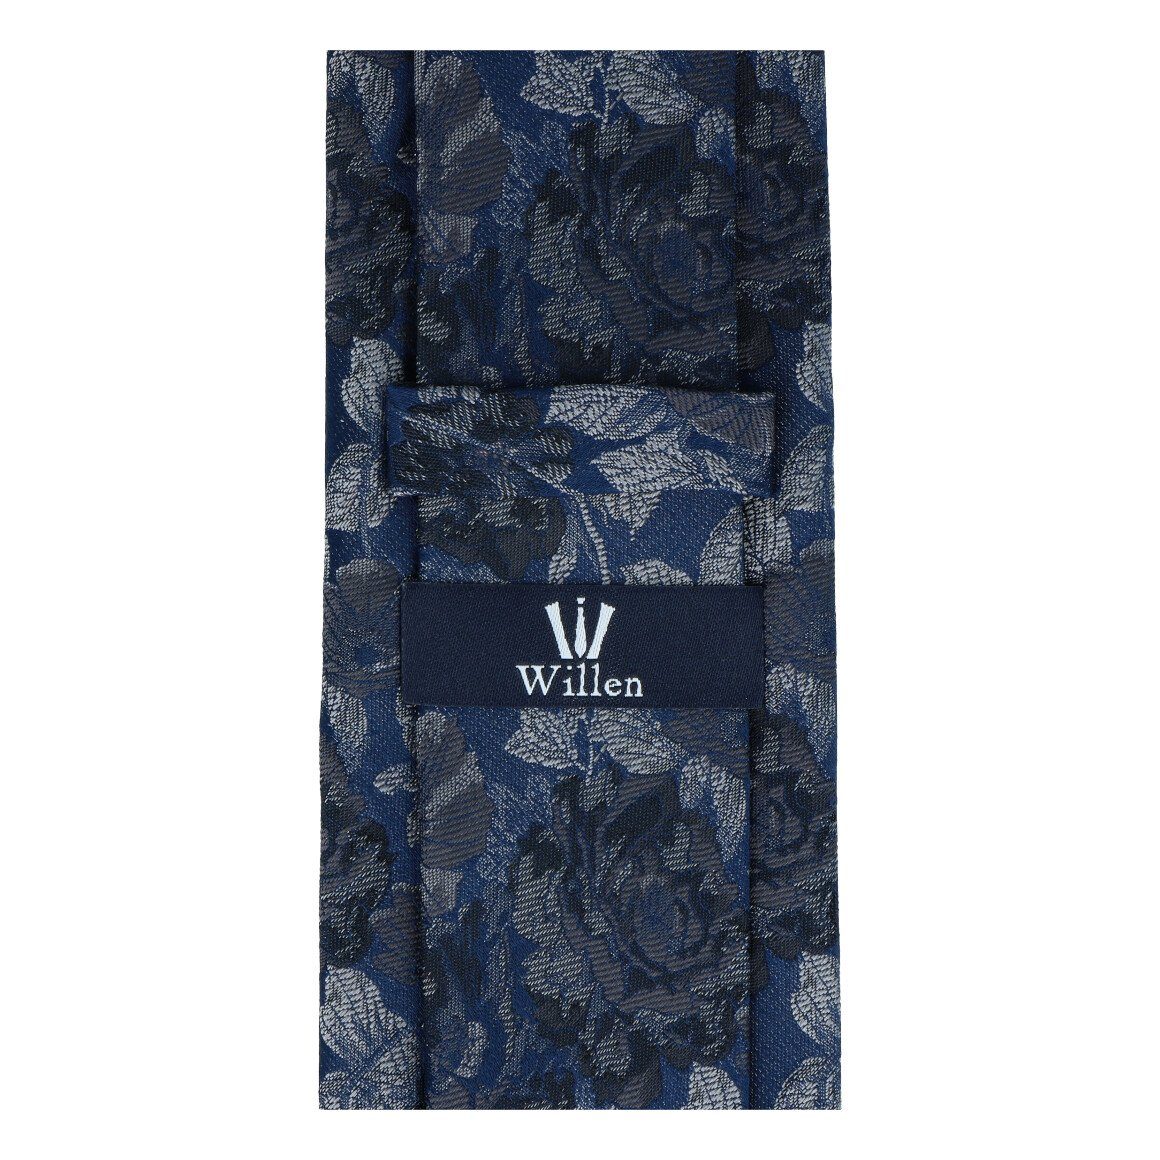 WILLEN Weste, Hemd & grau Krawatte/Fliege